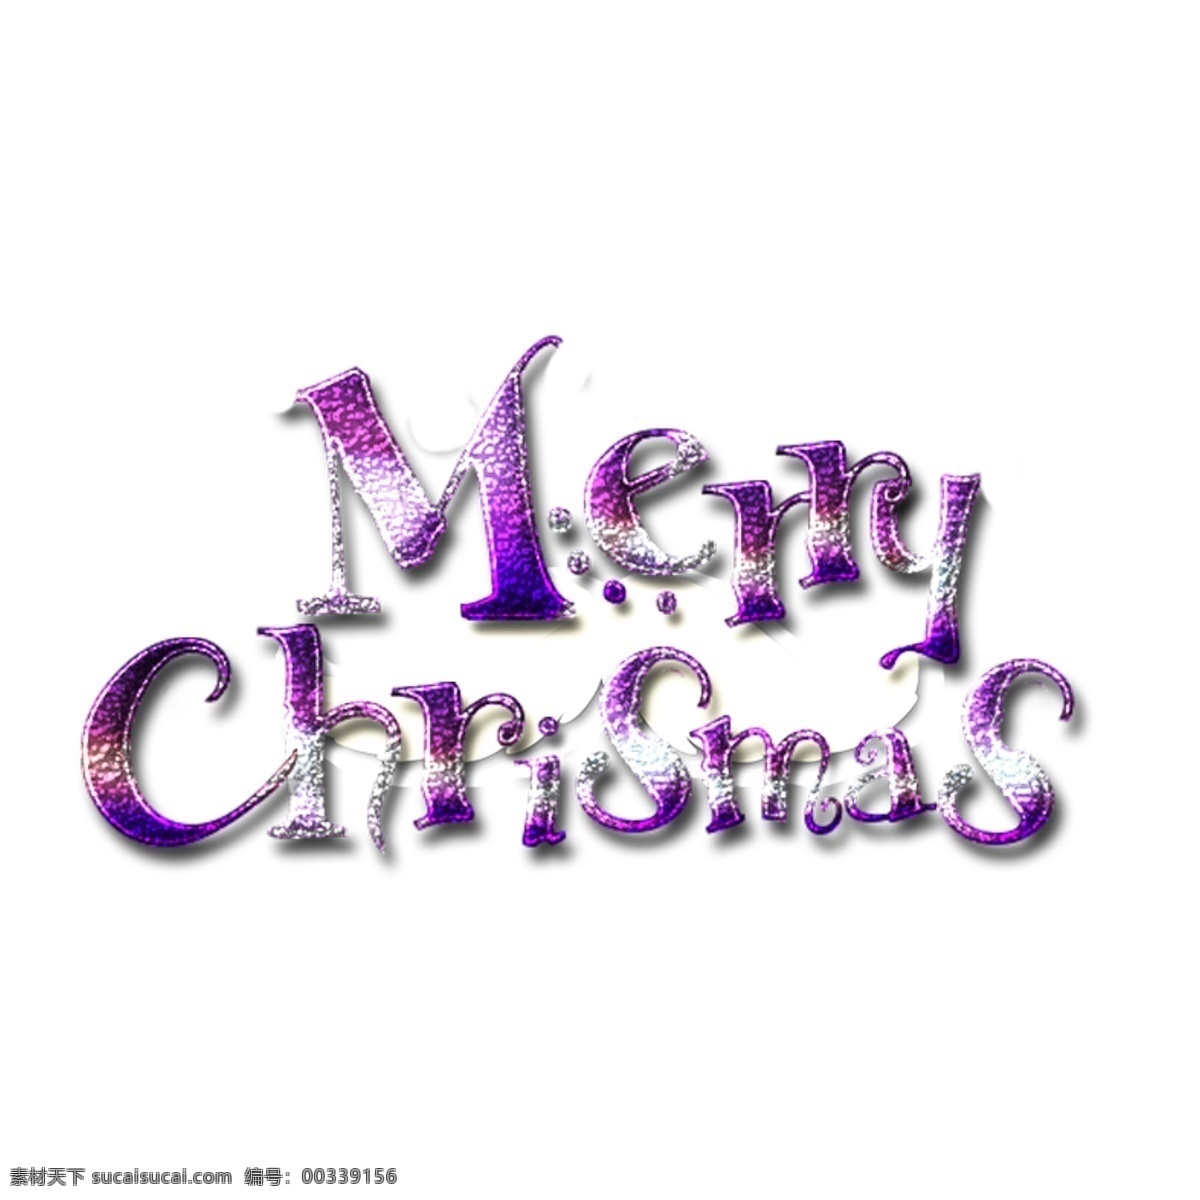 圣诞节艺术字 christmas 圣诞节素材 圣诞卡通 圣诞老人 麋鹿 merry 雪